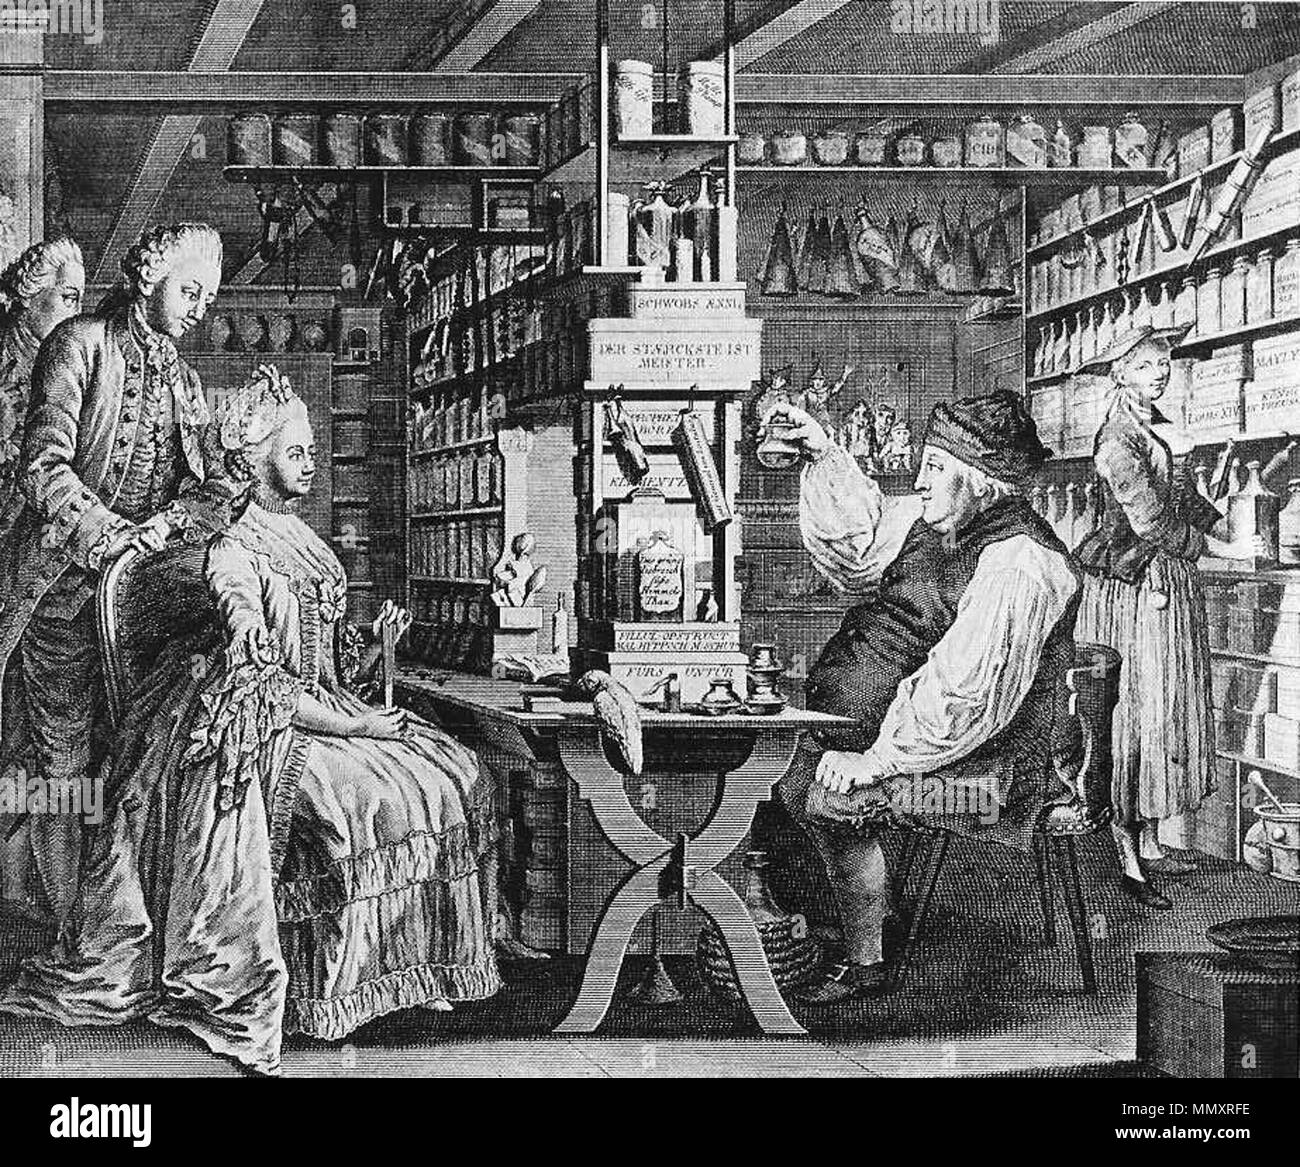 Врач по векам. Аптека 18 век Россия. Первая аптека в Москве 1581. Аптечное дело в России в 18 веке.